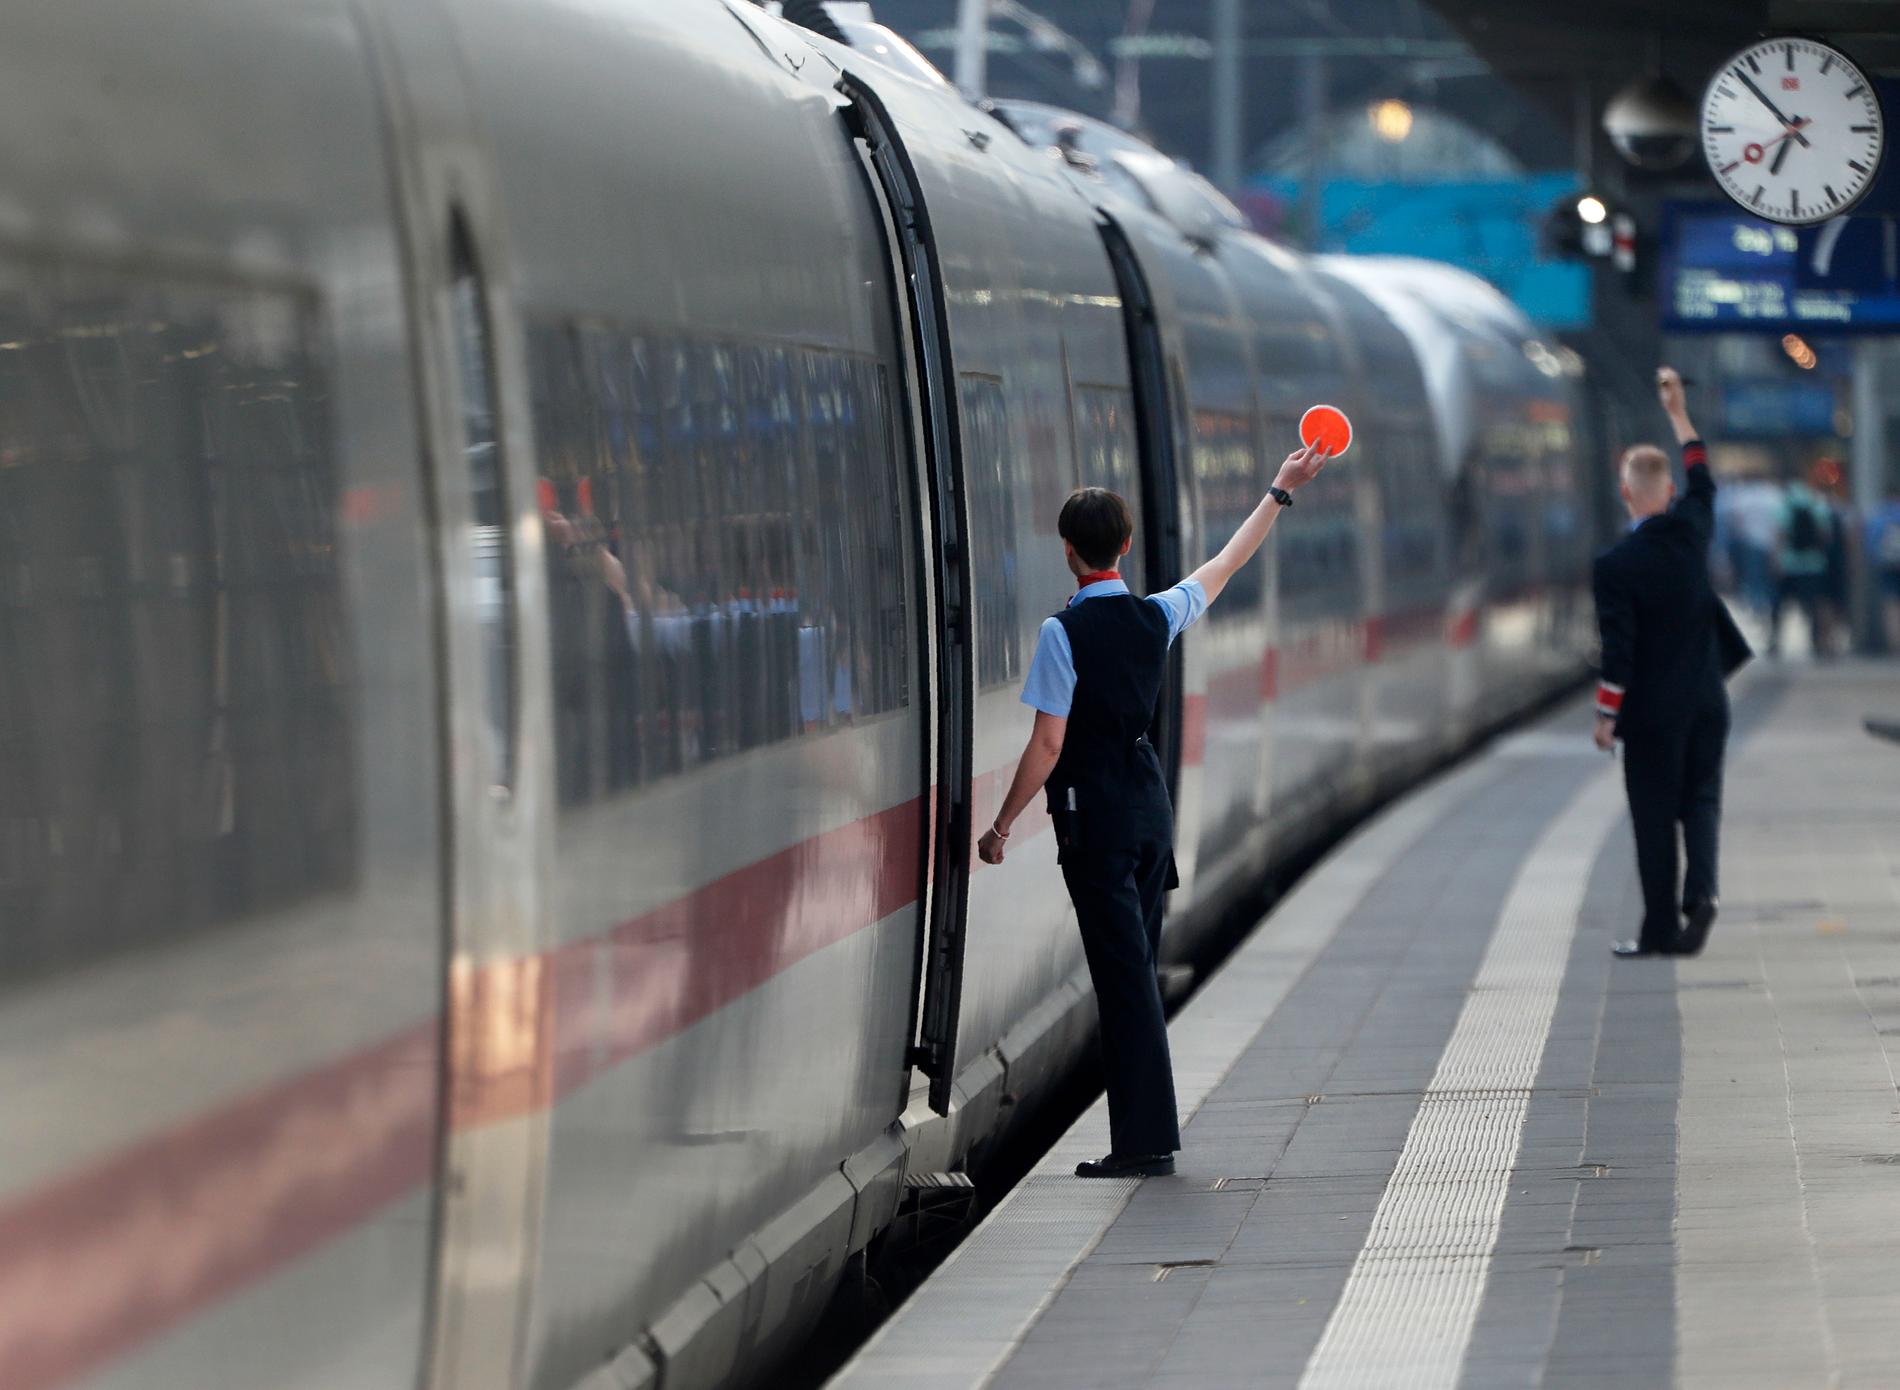 Blir det någonsin dags för avgång för snabbare svenska tåg? Här ska just ett höghastighetståg av typen ICE avgå i Frankfurt. Arkivbild.